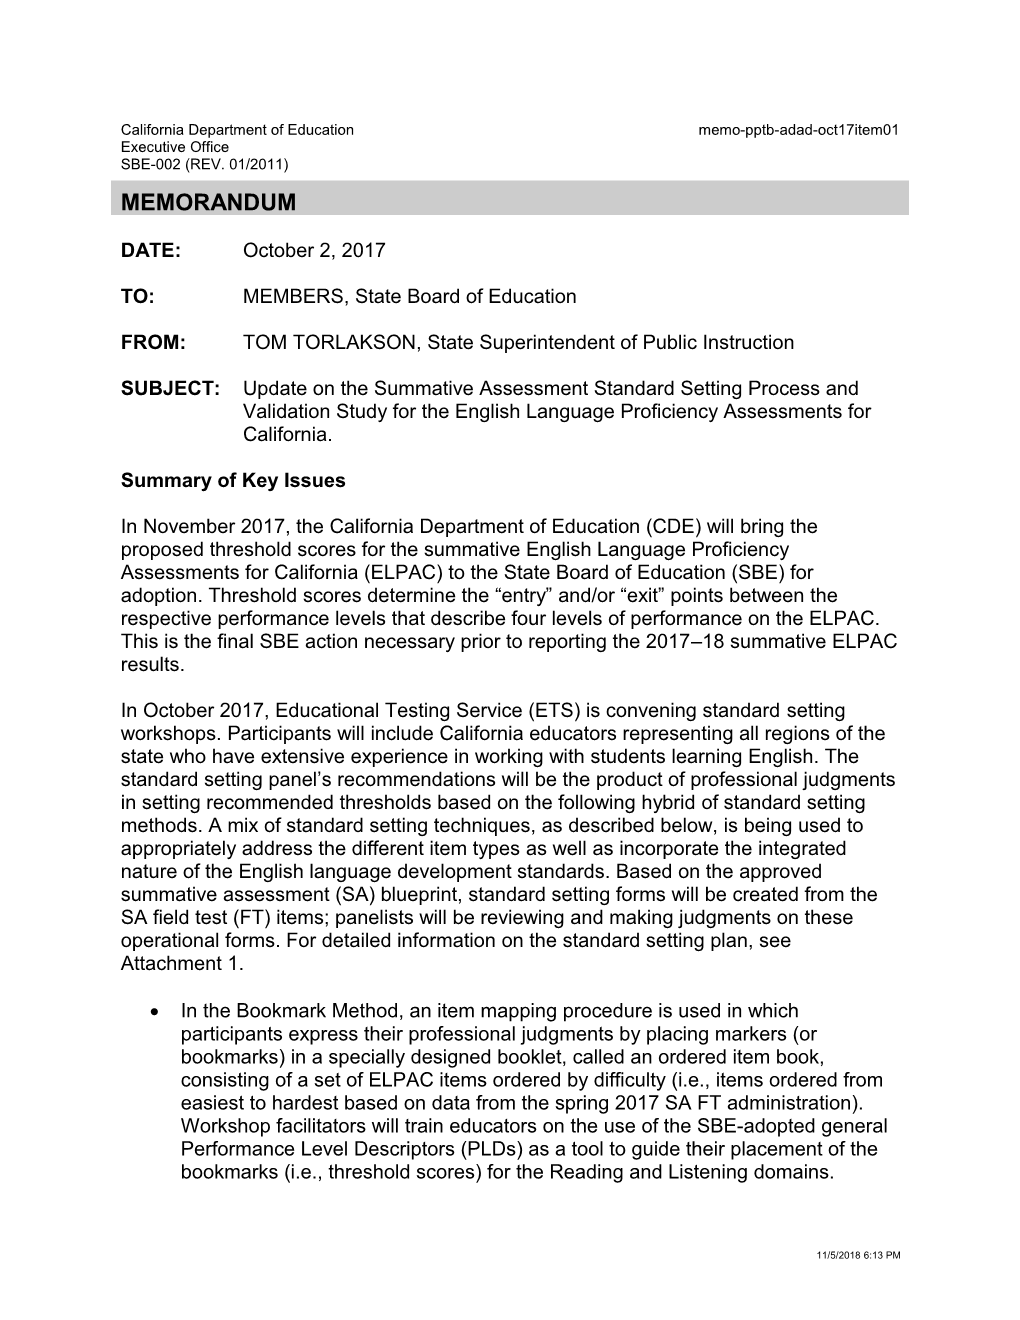 October 2017 Memo ADAD Item 01 - Information Memorandum (CA State Board of Education)